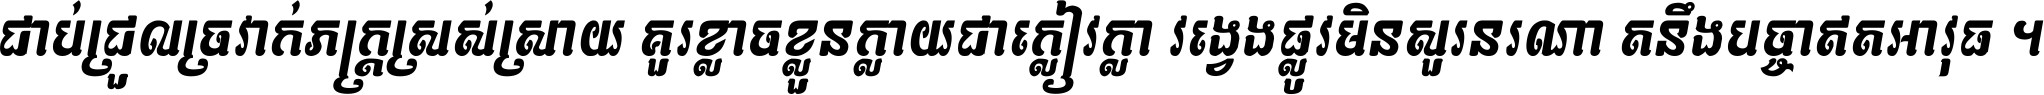 Kh Baphnom 026 Theany Italic